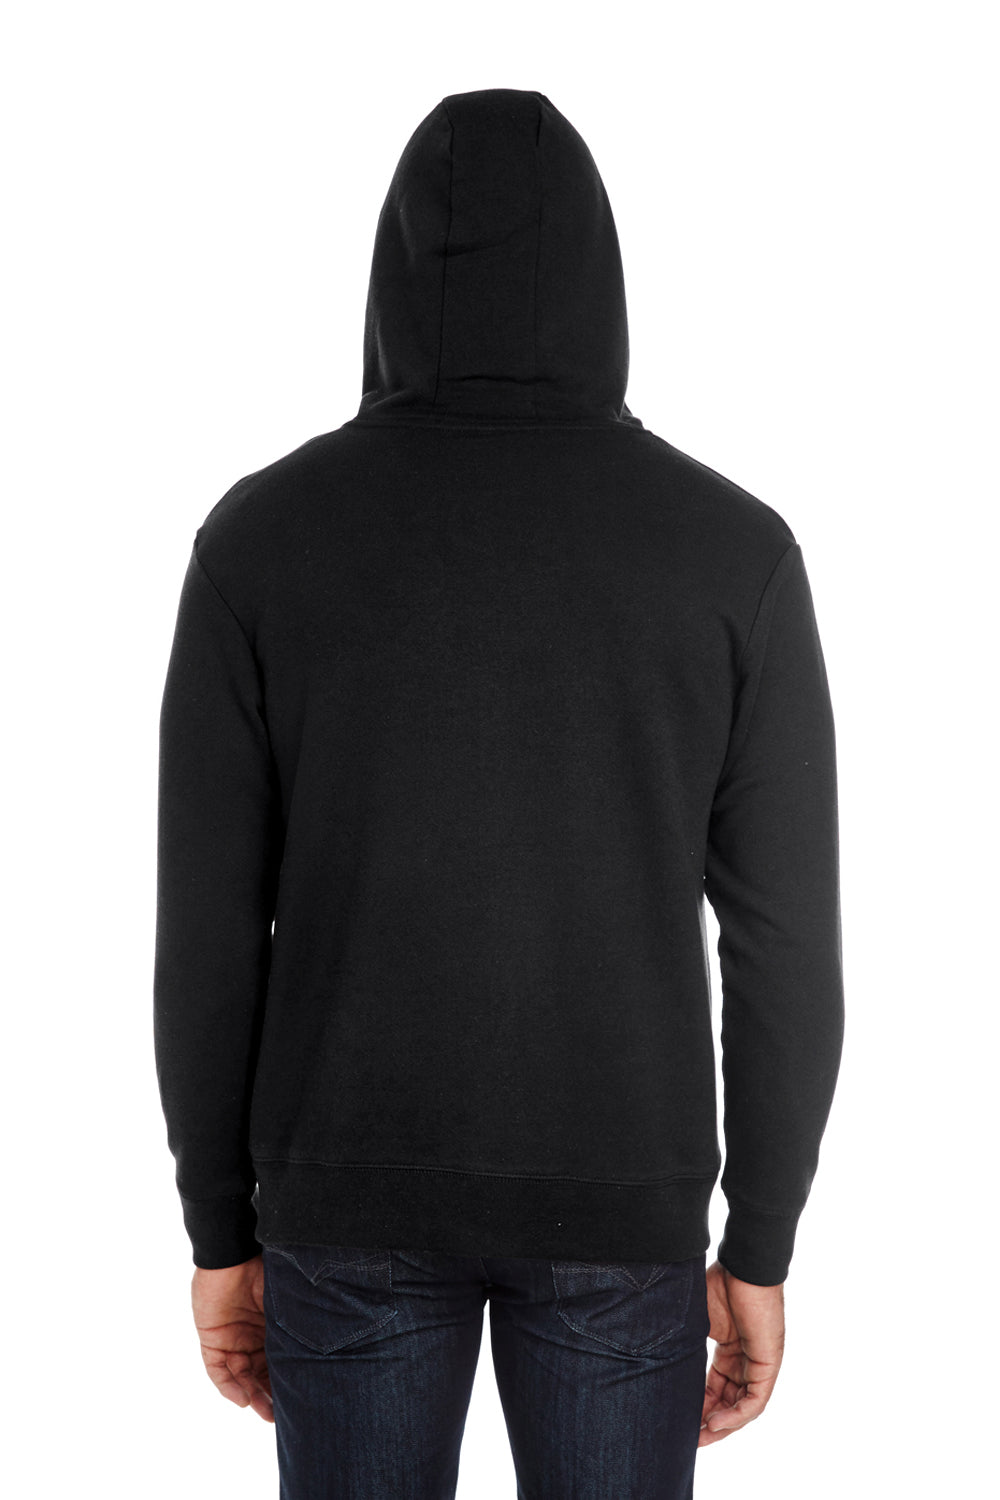 Threadfast Apparel 321Z Mens French Terry Full Zip Hooded Sweatshirt Hoodie Black Back